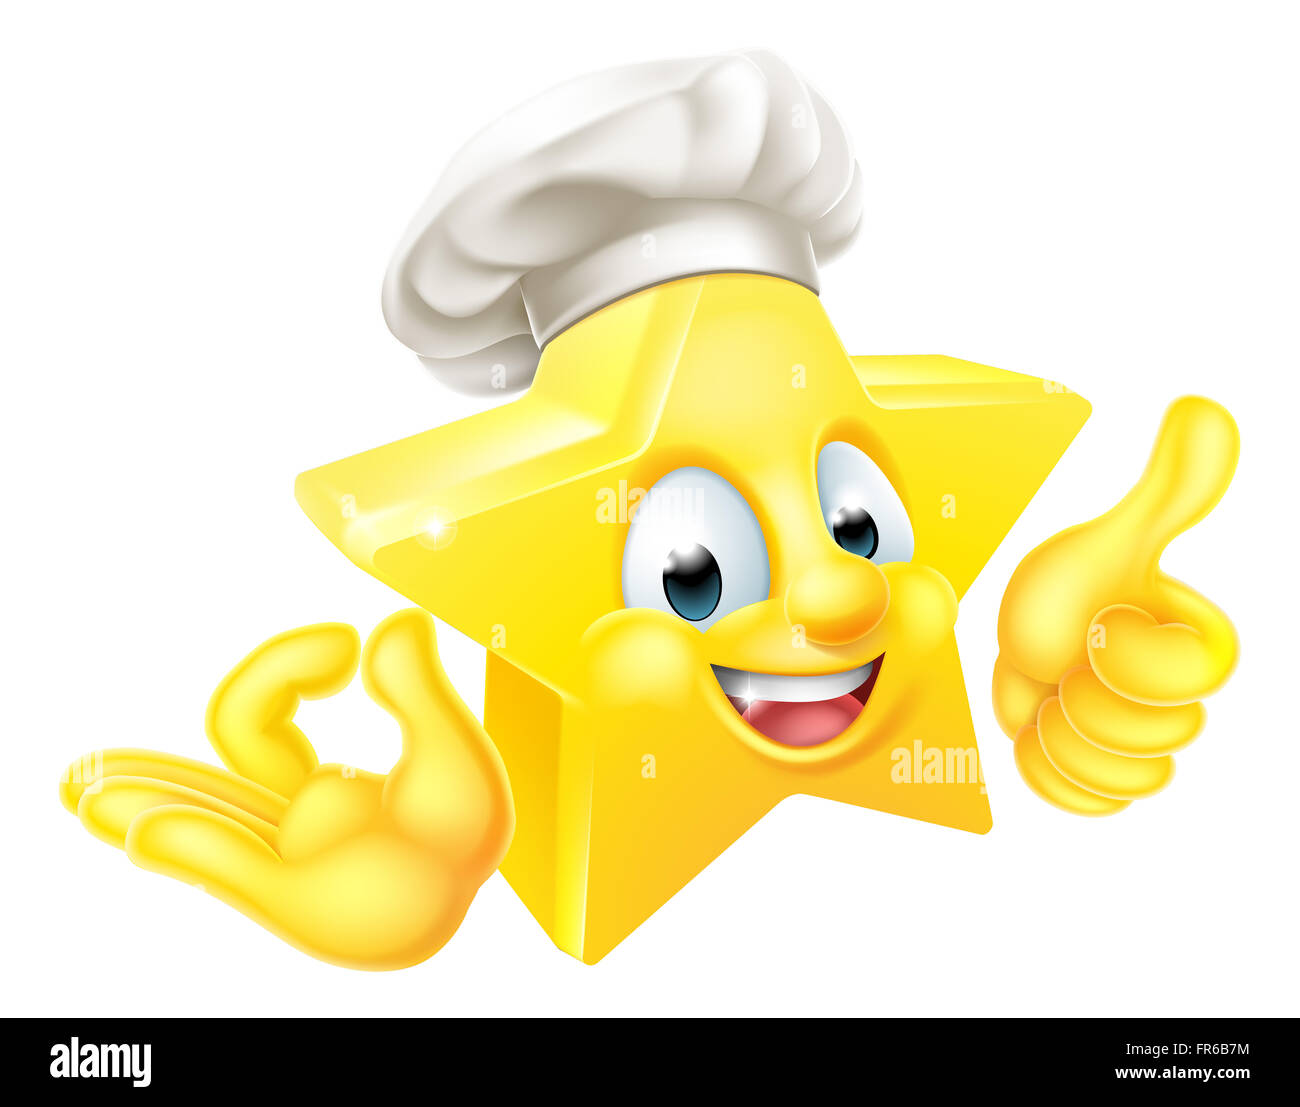 Le chef étoilé de dessin animé emoticon emoji mascot character faisant un signe de main parfaite et de donner un coup de pouce Banque D'Images